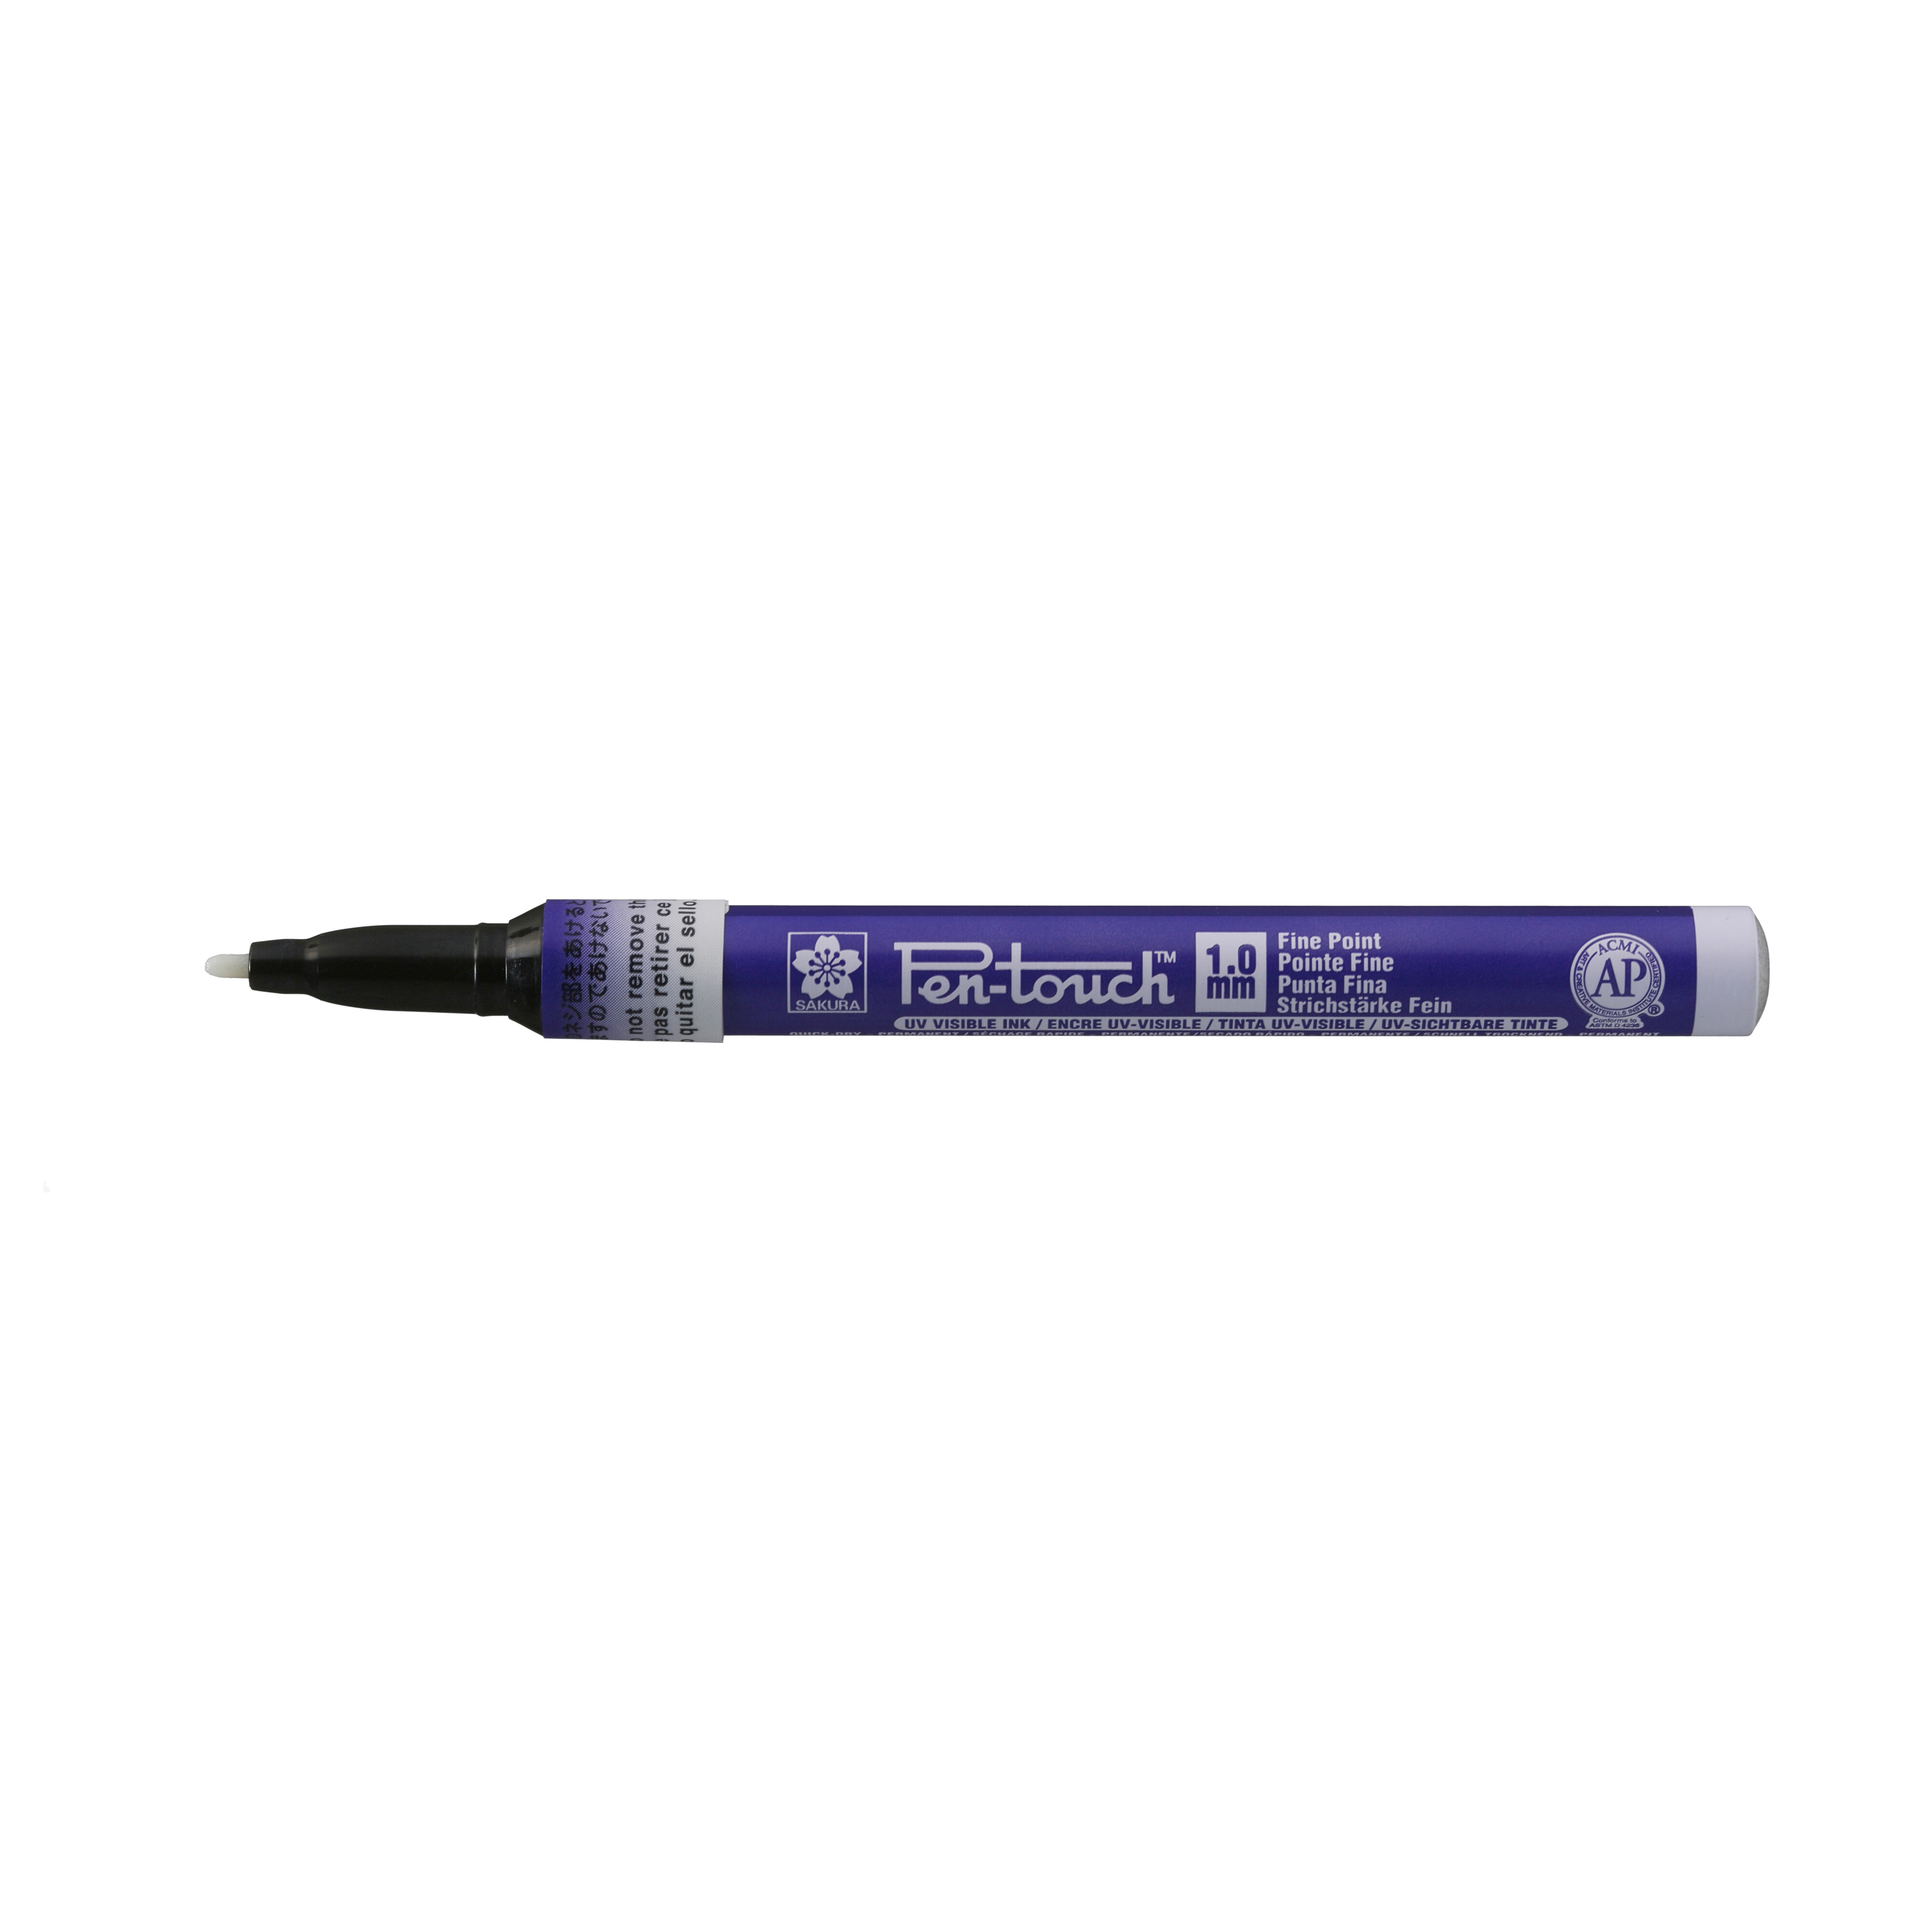 Sakura Pen-touch fijn UV Blauw